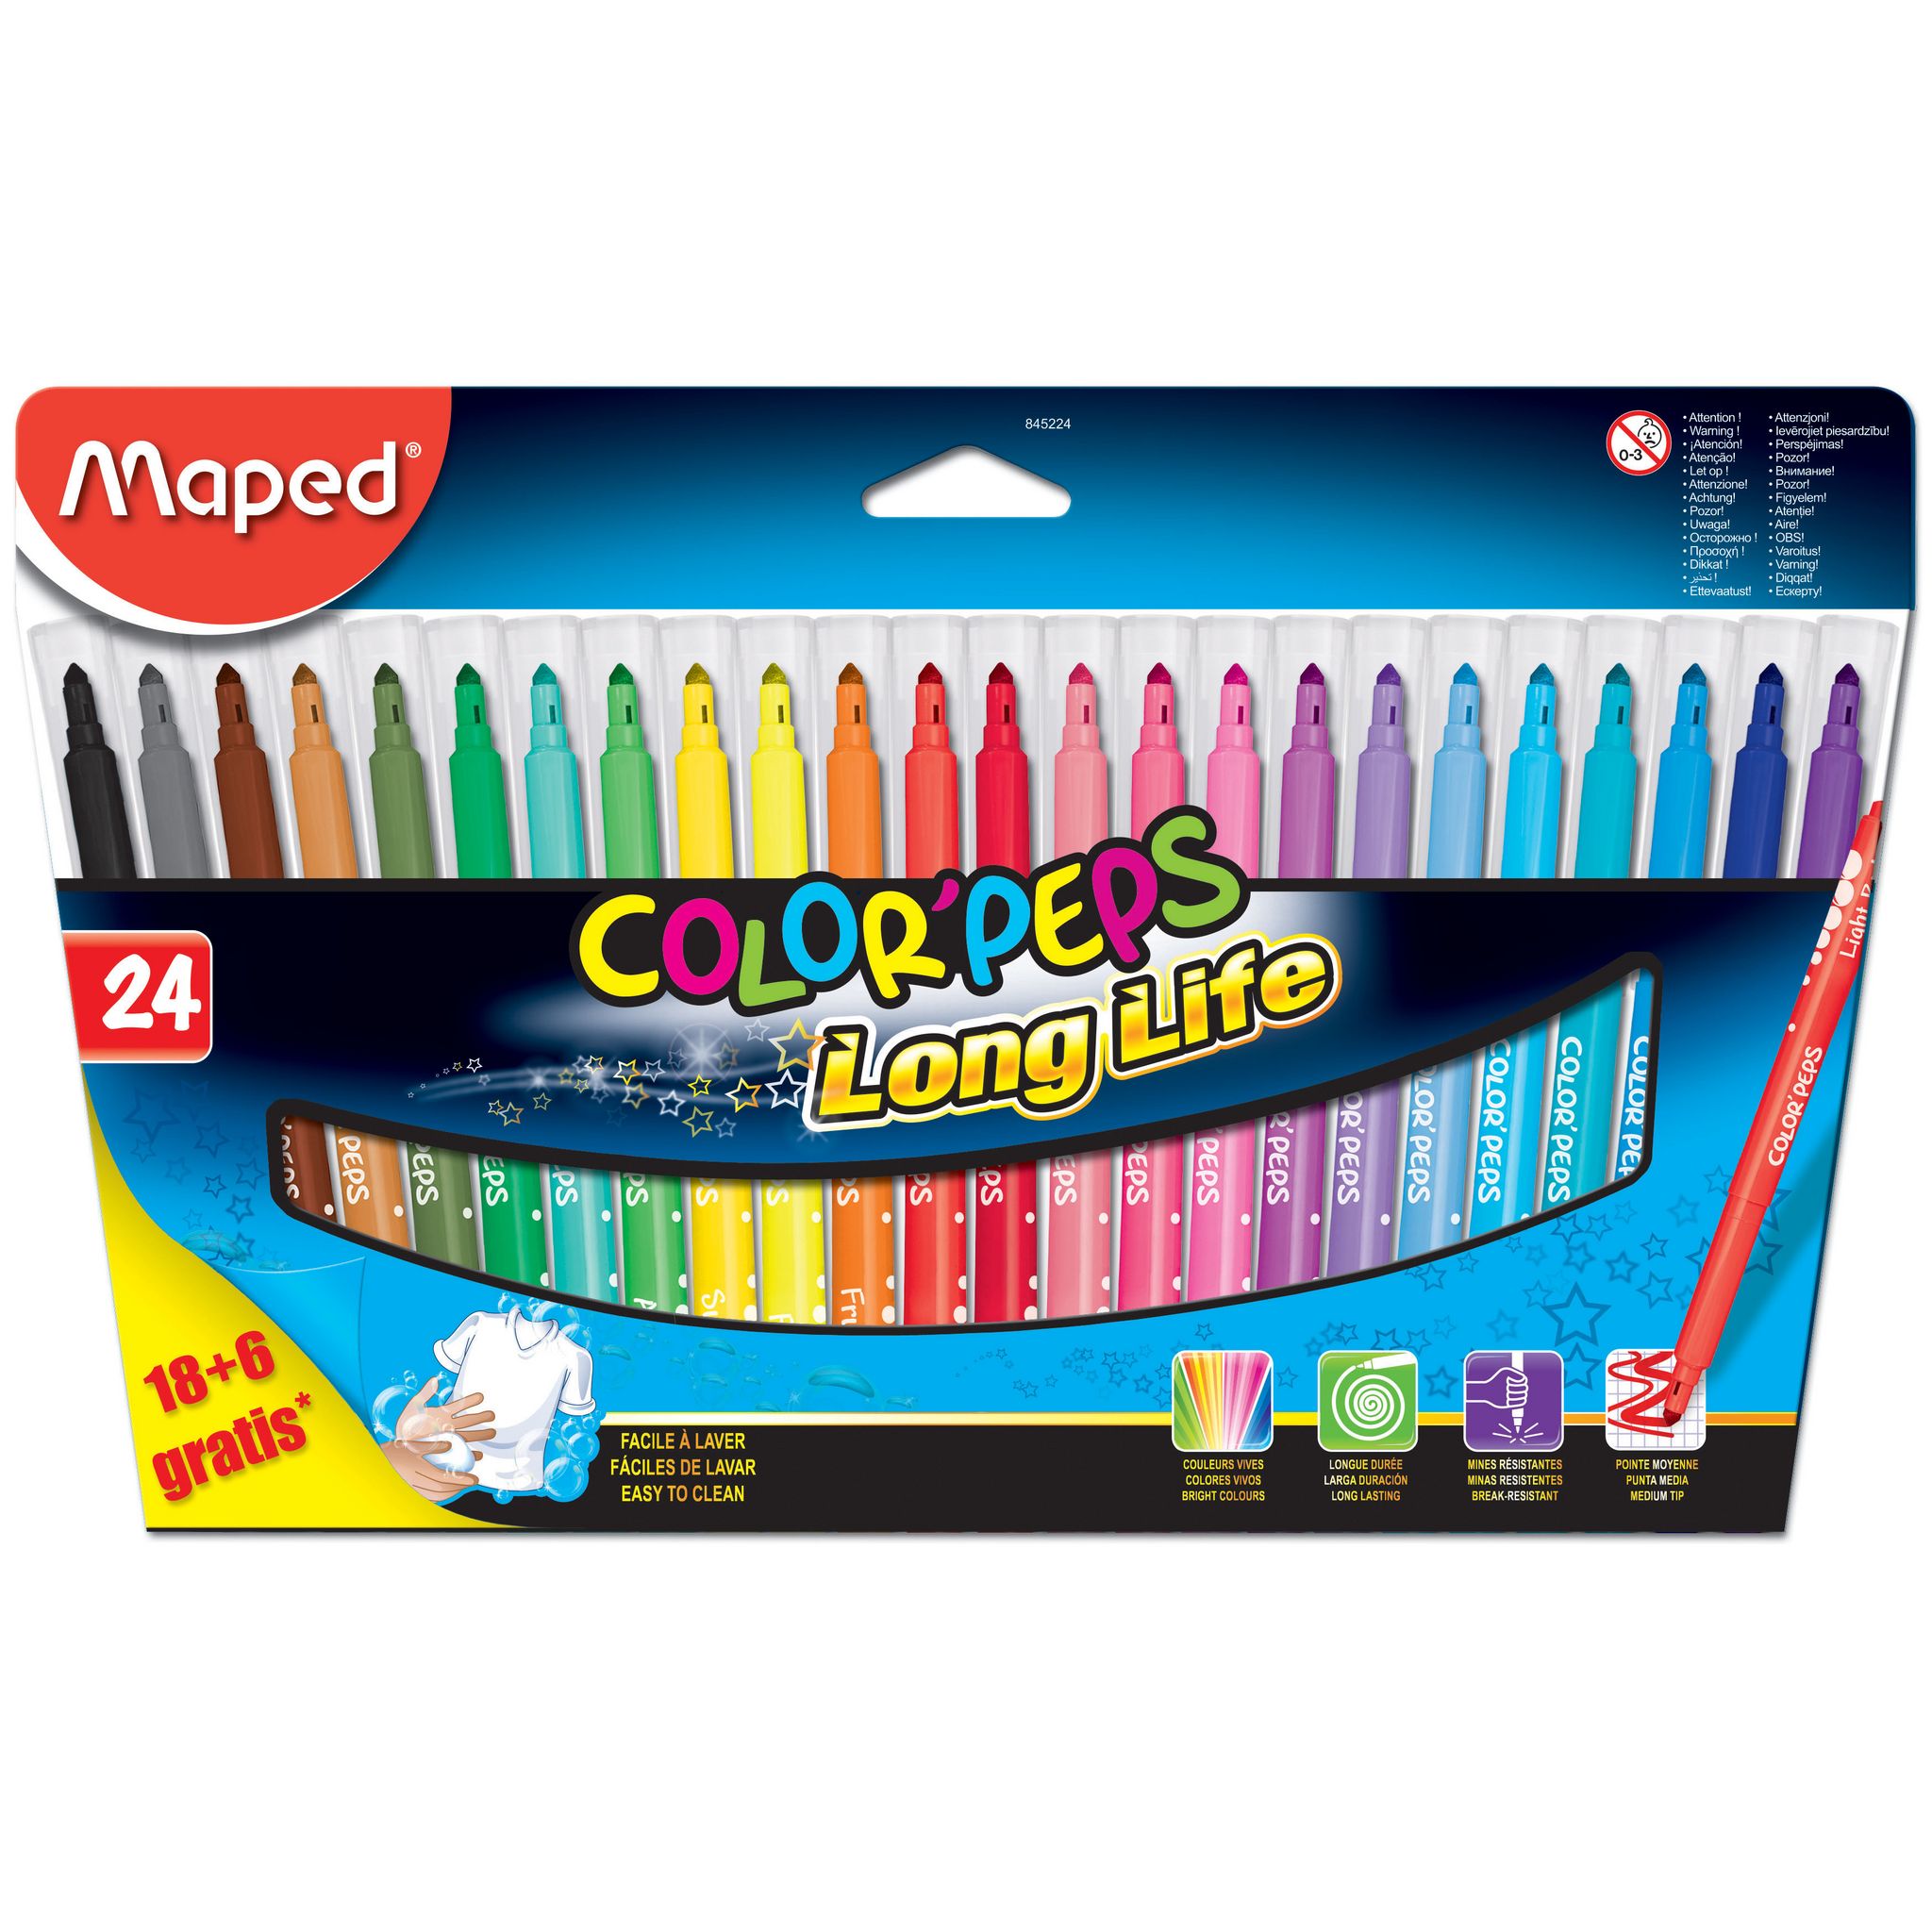 15 feutres de coloriage - Pointe moyenne - Ultra lavable - Color'Peps Long  life - Maped - Opportunité